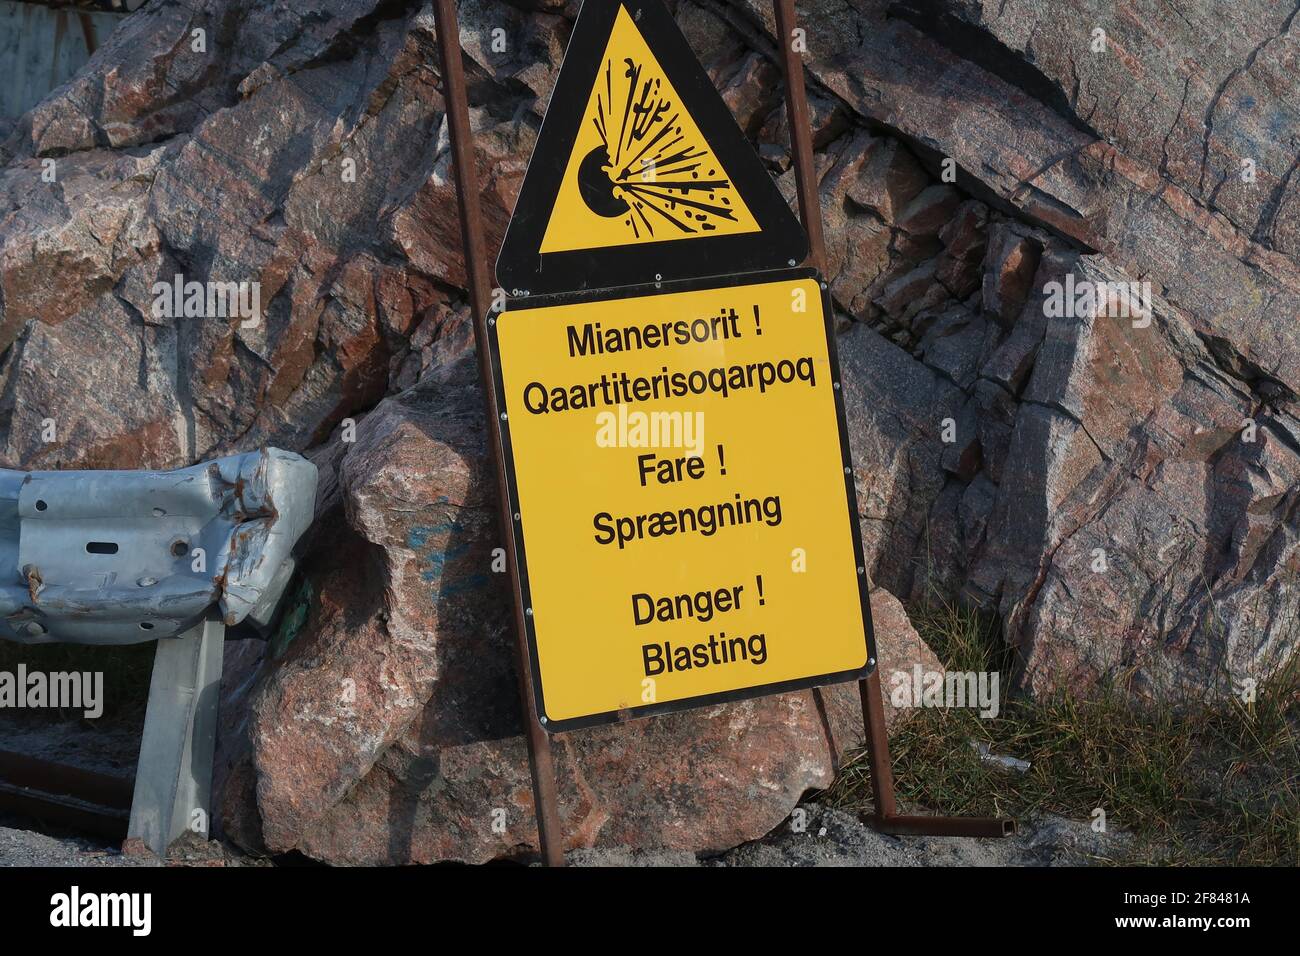 Gelbes Schild. Warnung vor Sprengungen in Grönländischer, Dänisch und Englisch Stock Photo